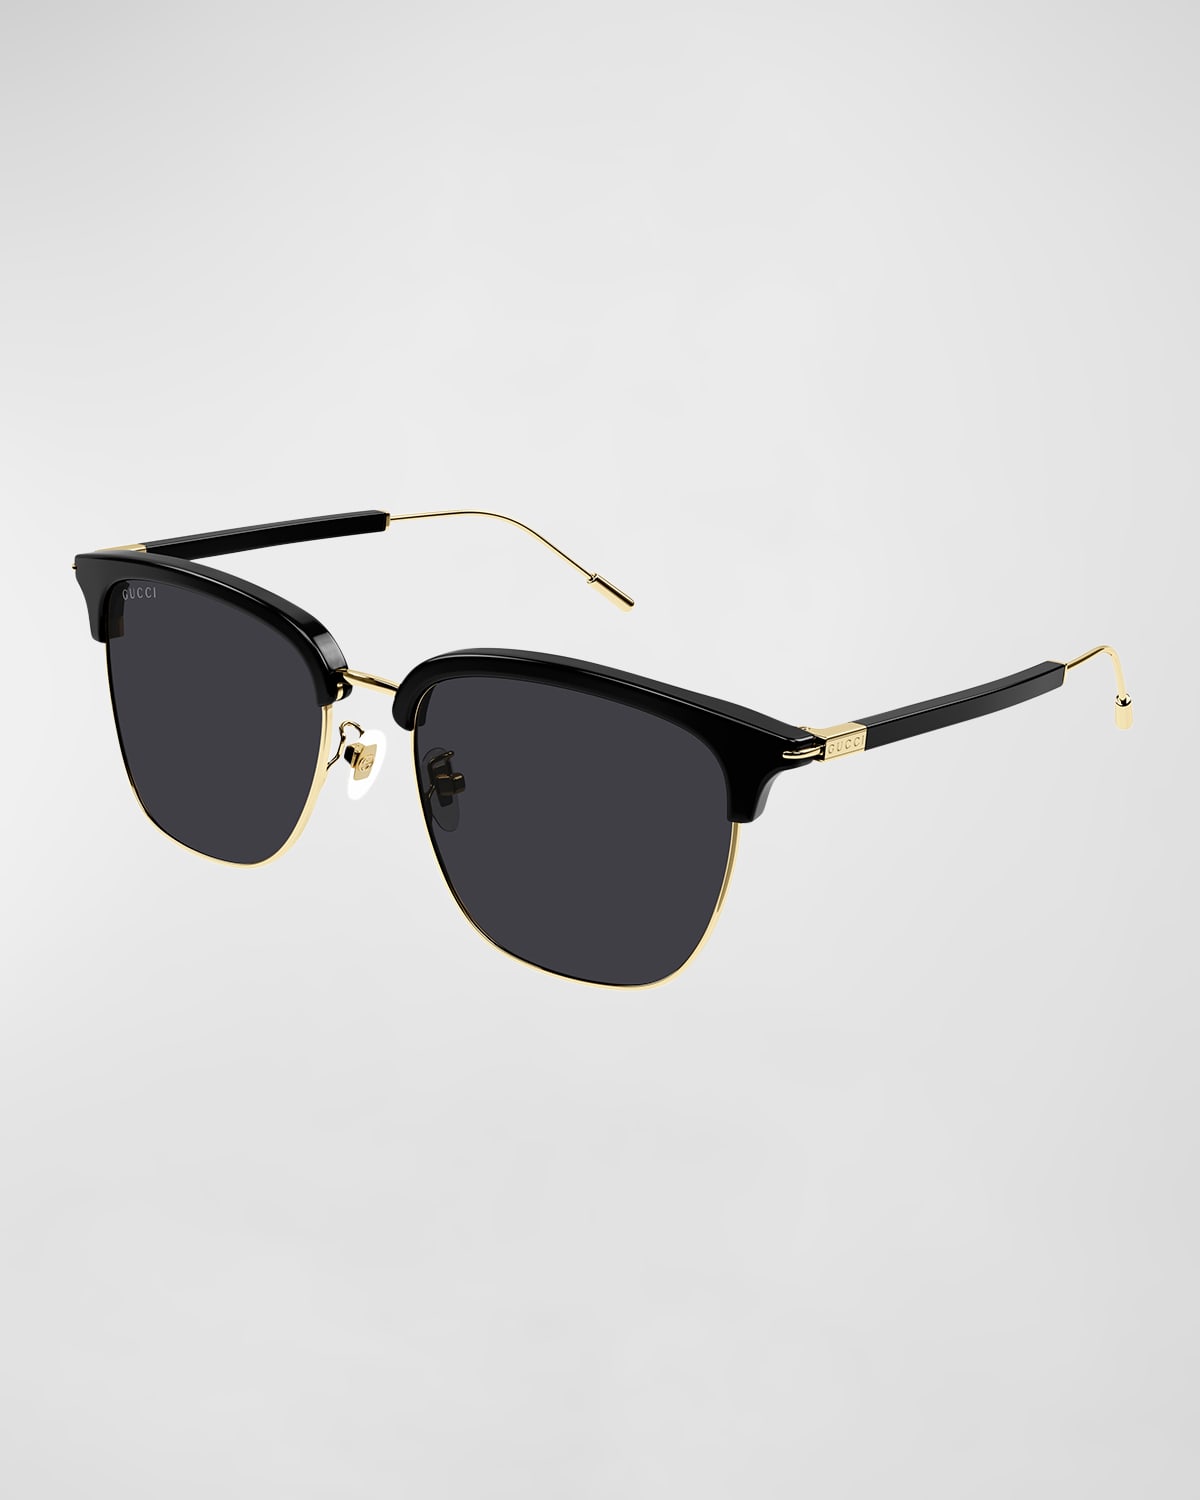 Gucci Men's Half-rim Acetate/metal Round Sunglasses In 001 Black